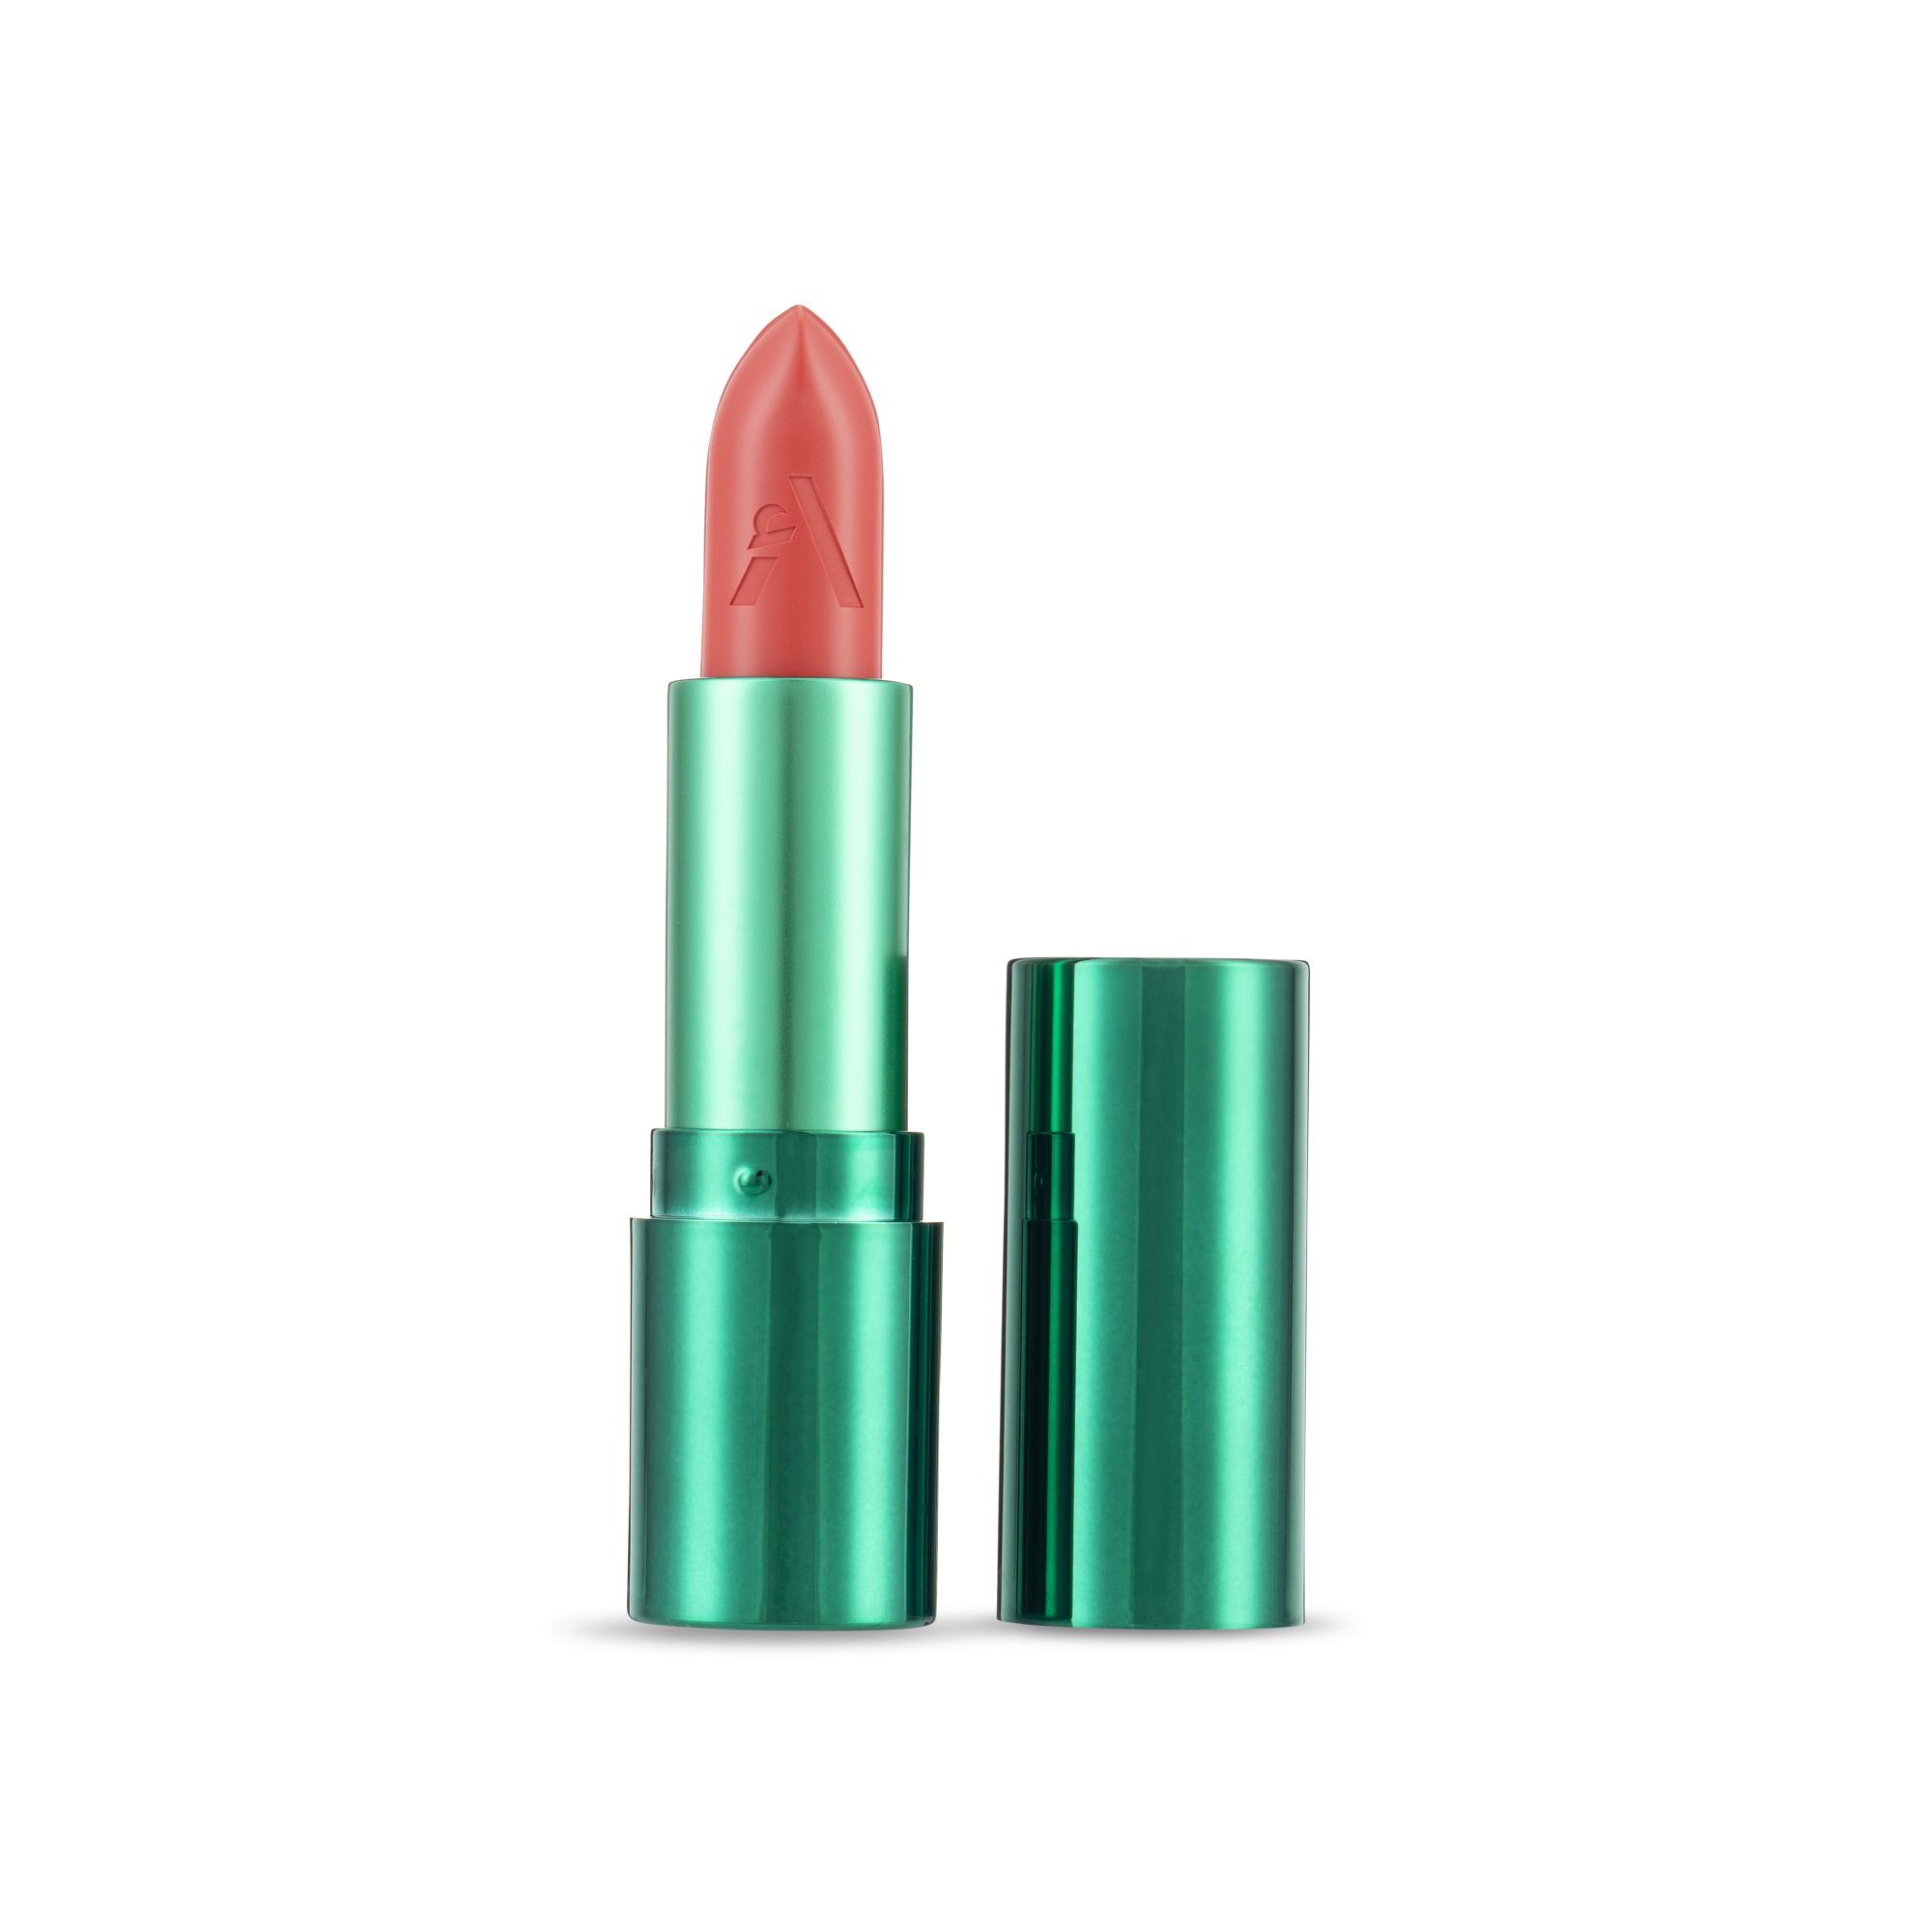 Legacy lipstick shade monira by Asteri Beauty